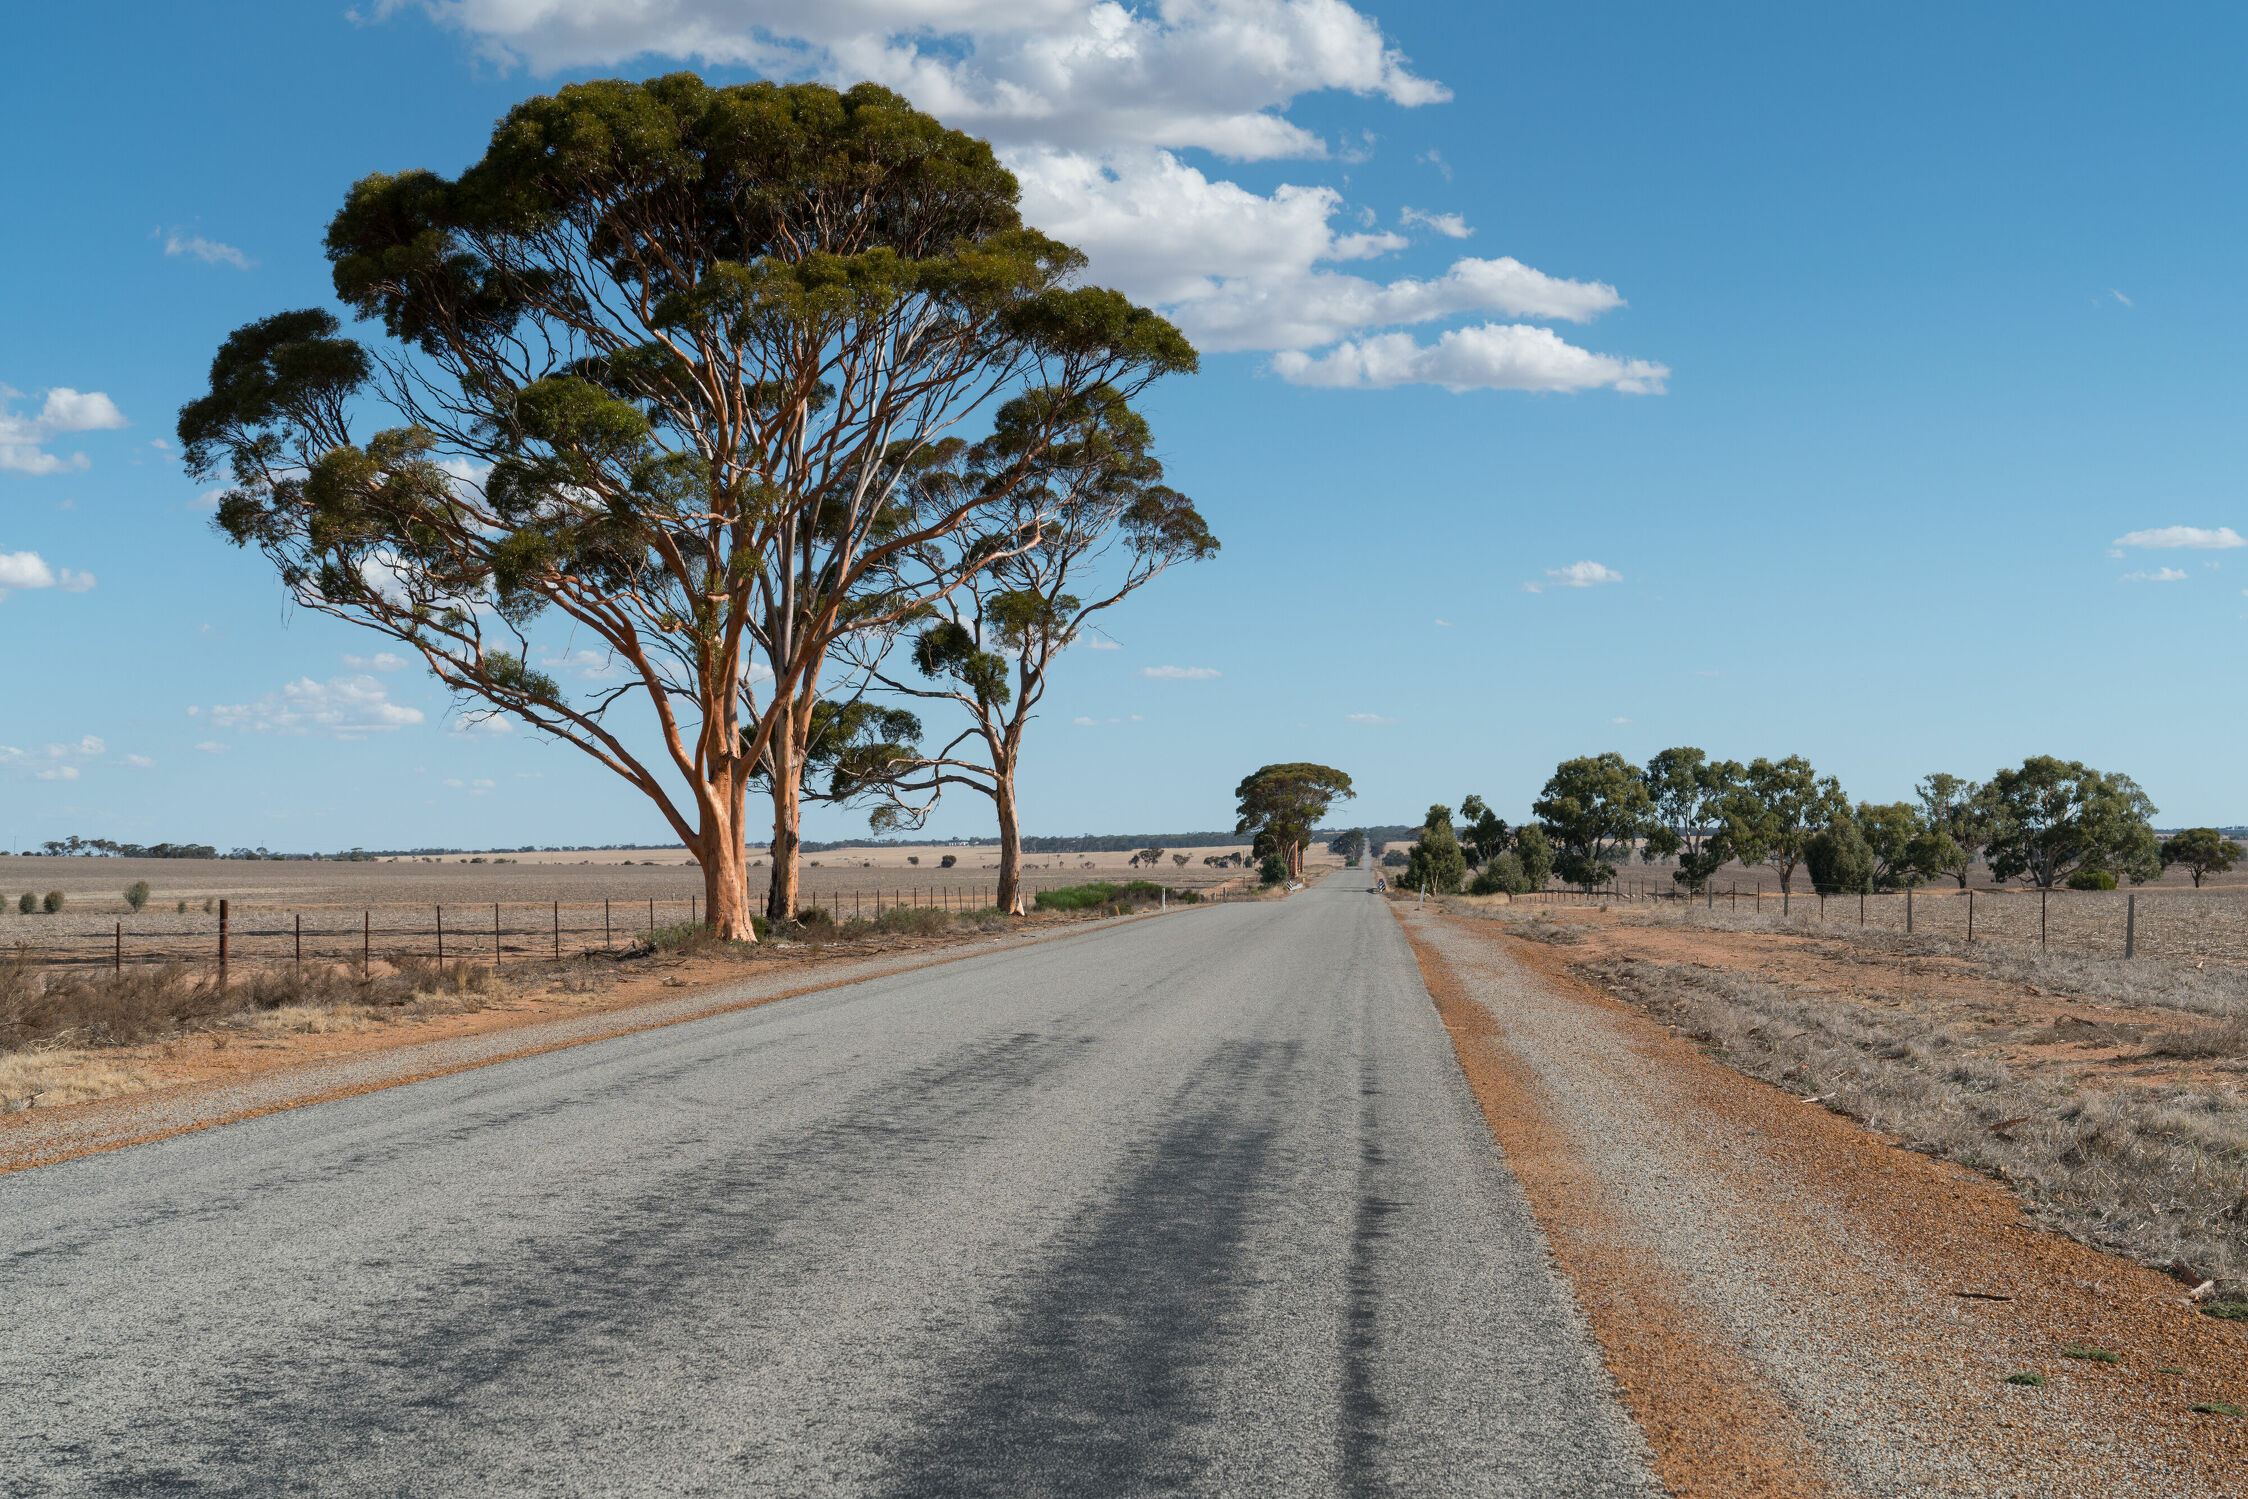 Bild mit Natur, Landschaften, Straßen und Wege, Panorama, Reisen, Australien, Western Australia, outback